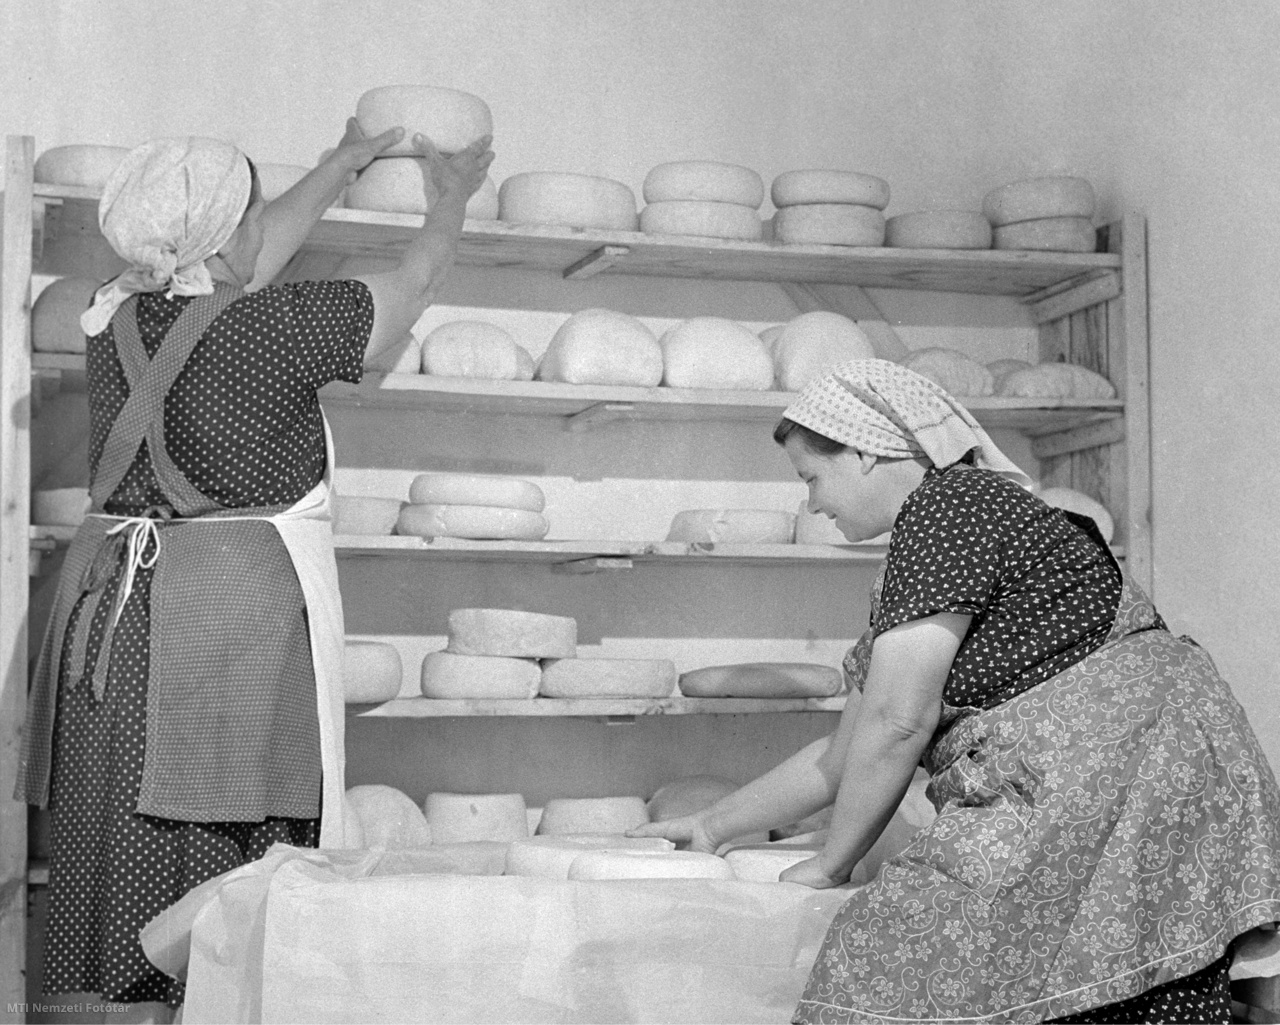 Tatárszentgyörgy, 1958. július 21. Az elkészült sajtokat pakolják a tatárszentgyörgyi juhtenyésztő szakcsoport dolgozói a tej- és sajtfeldolgozóban, ahol túrót, sajtot és egyéb juhtejterméket állítanak elő.